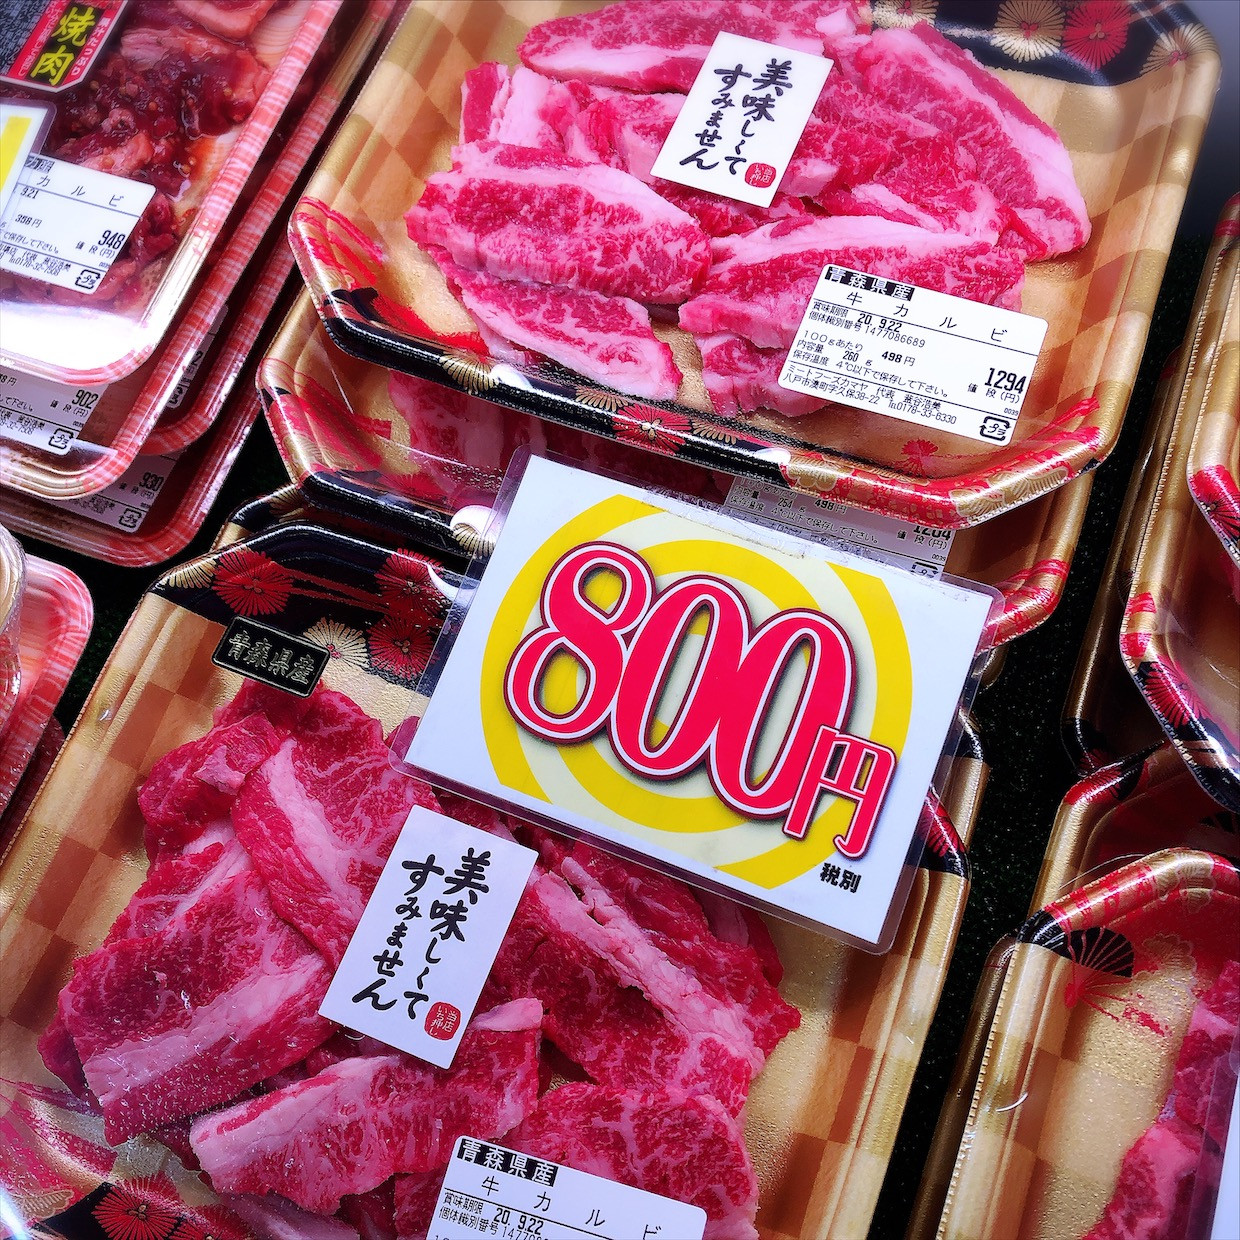 本日は青森県産牛カルビがお買得です。